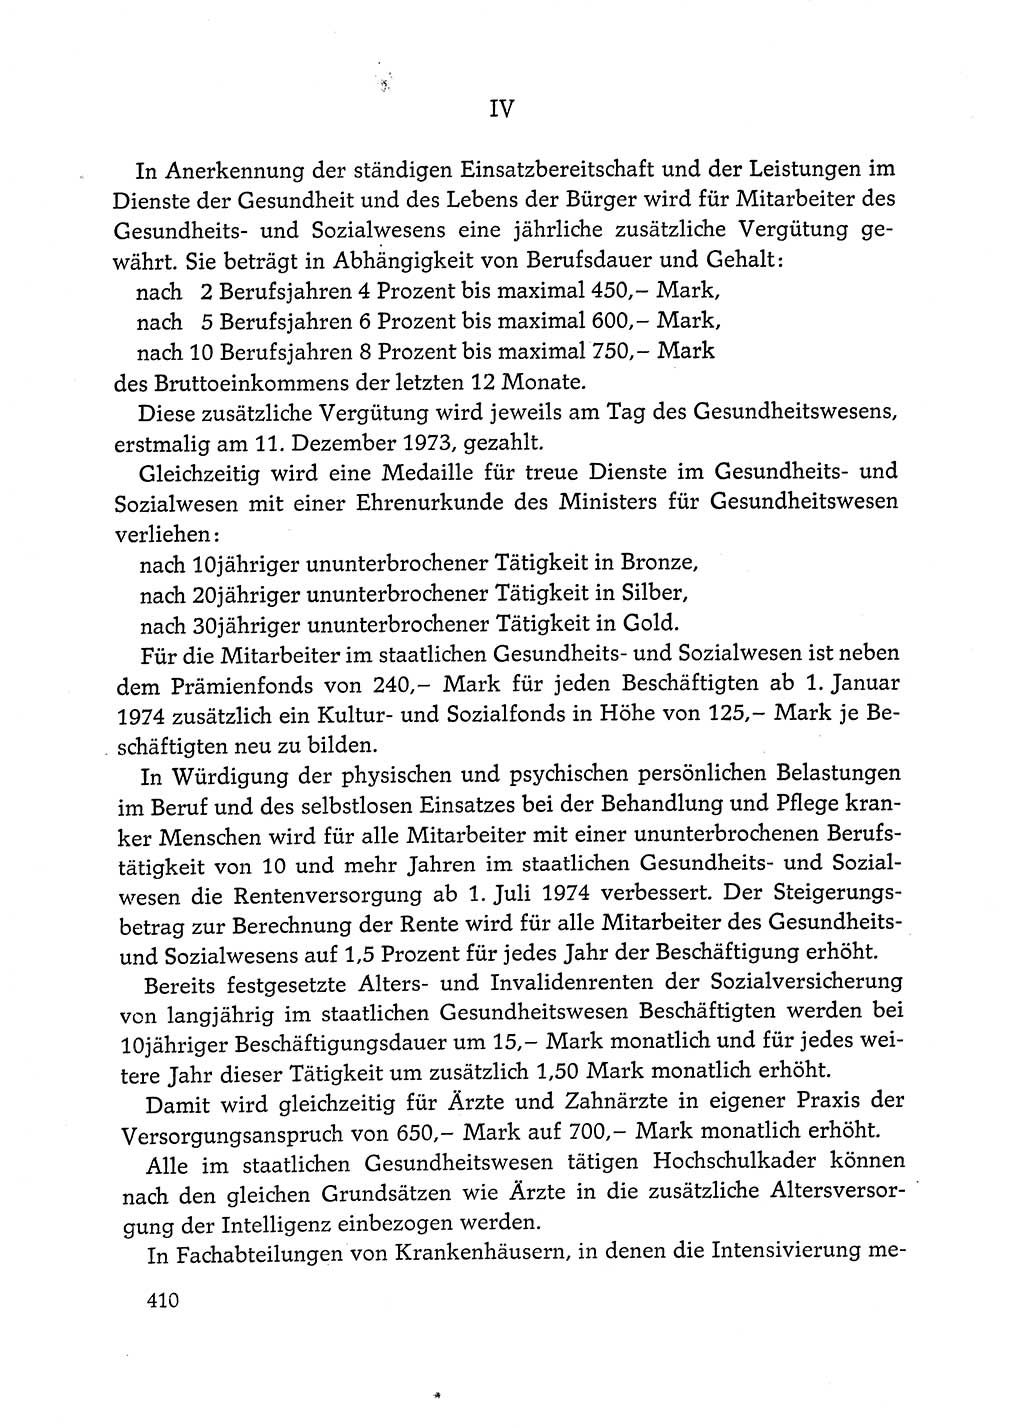 Dokumente der Sozialistischen Einheitspartei Deutschlands (SED) [Deutsche Demokratische Republik (DDR)] 1972-1973, Seite 410 (Dok. SED DDR 1972-1973, S. 410)